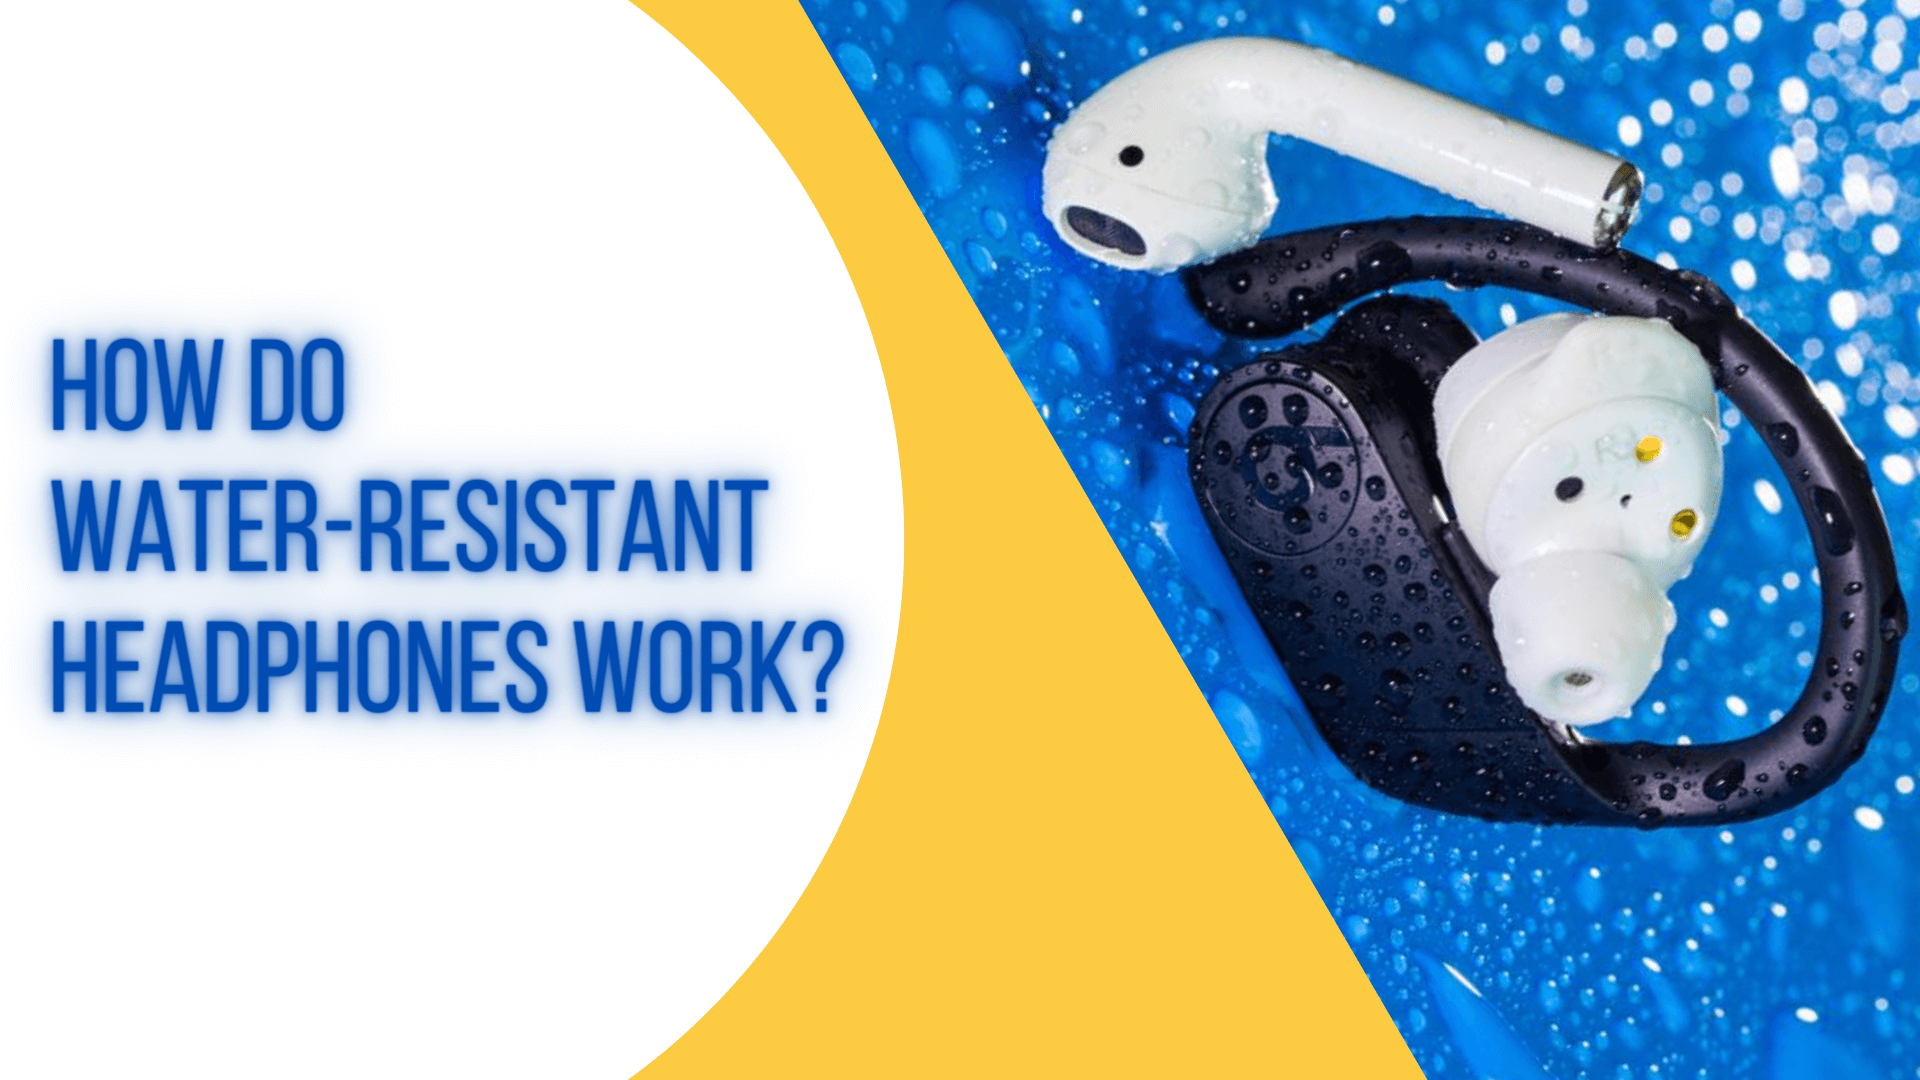 How Do Water-resistant Headphones Work?